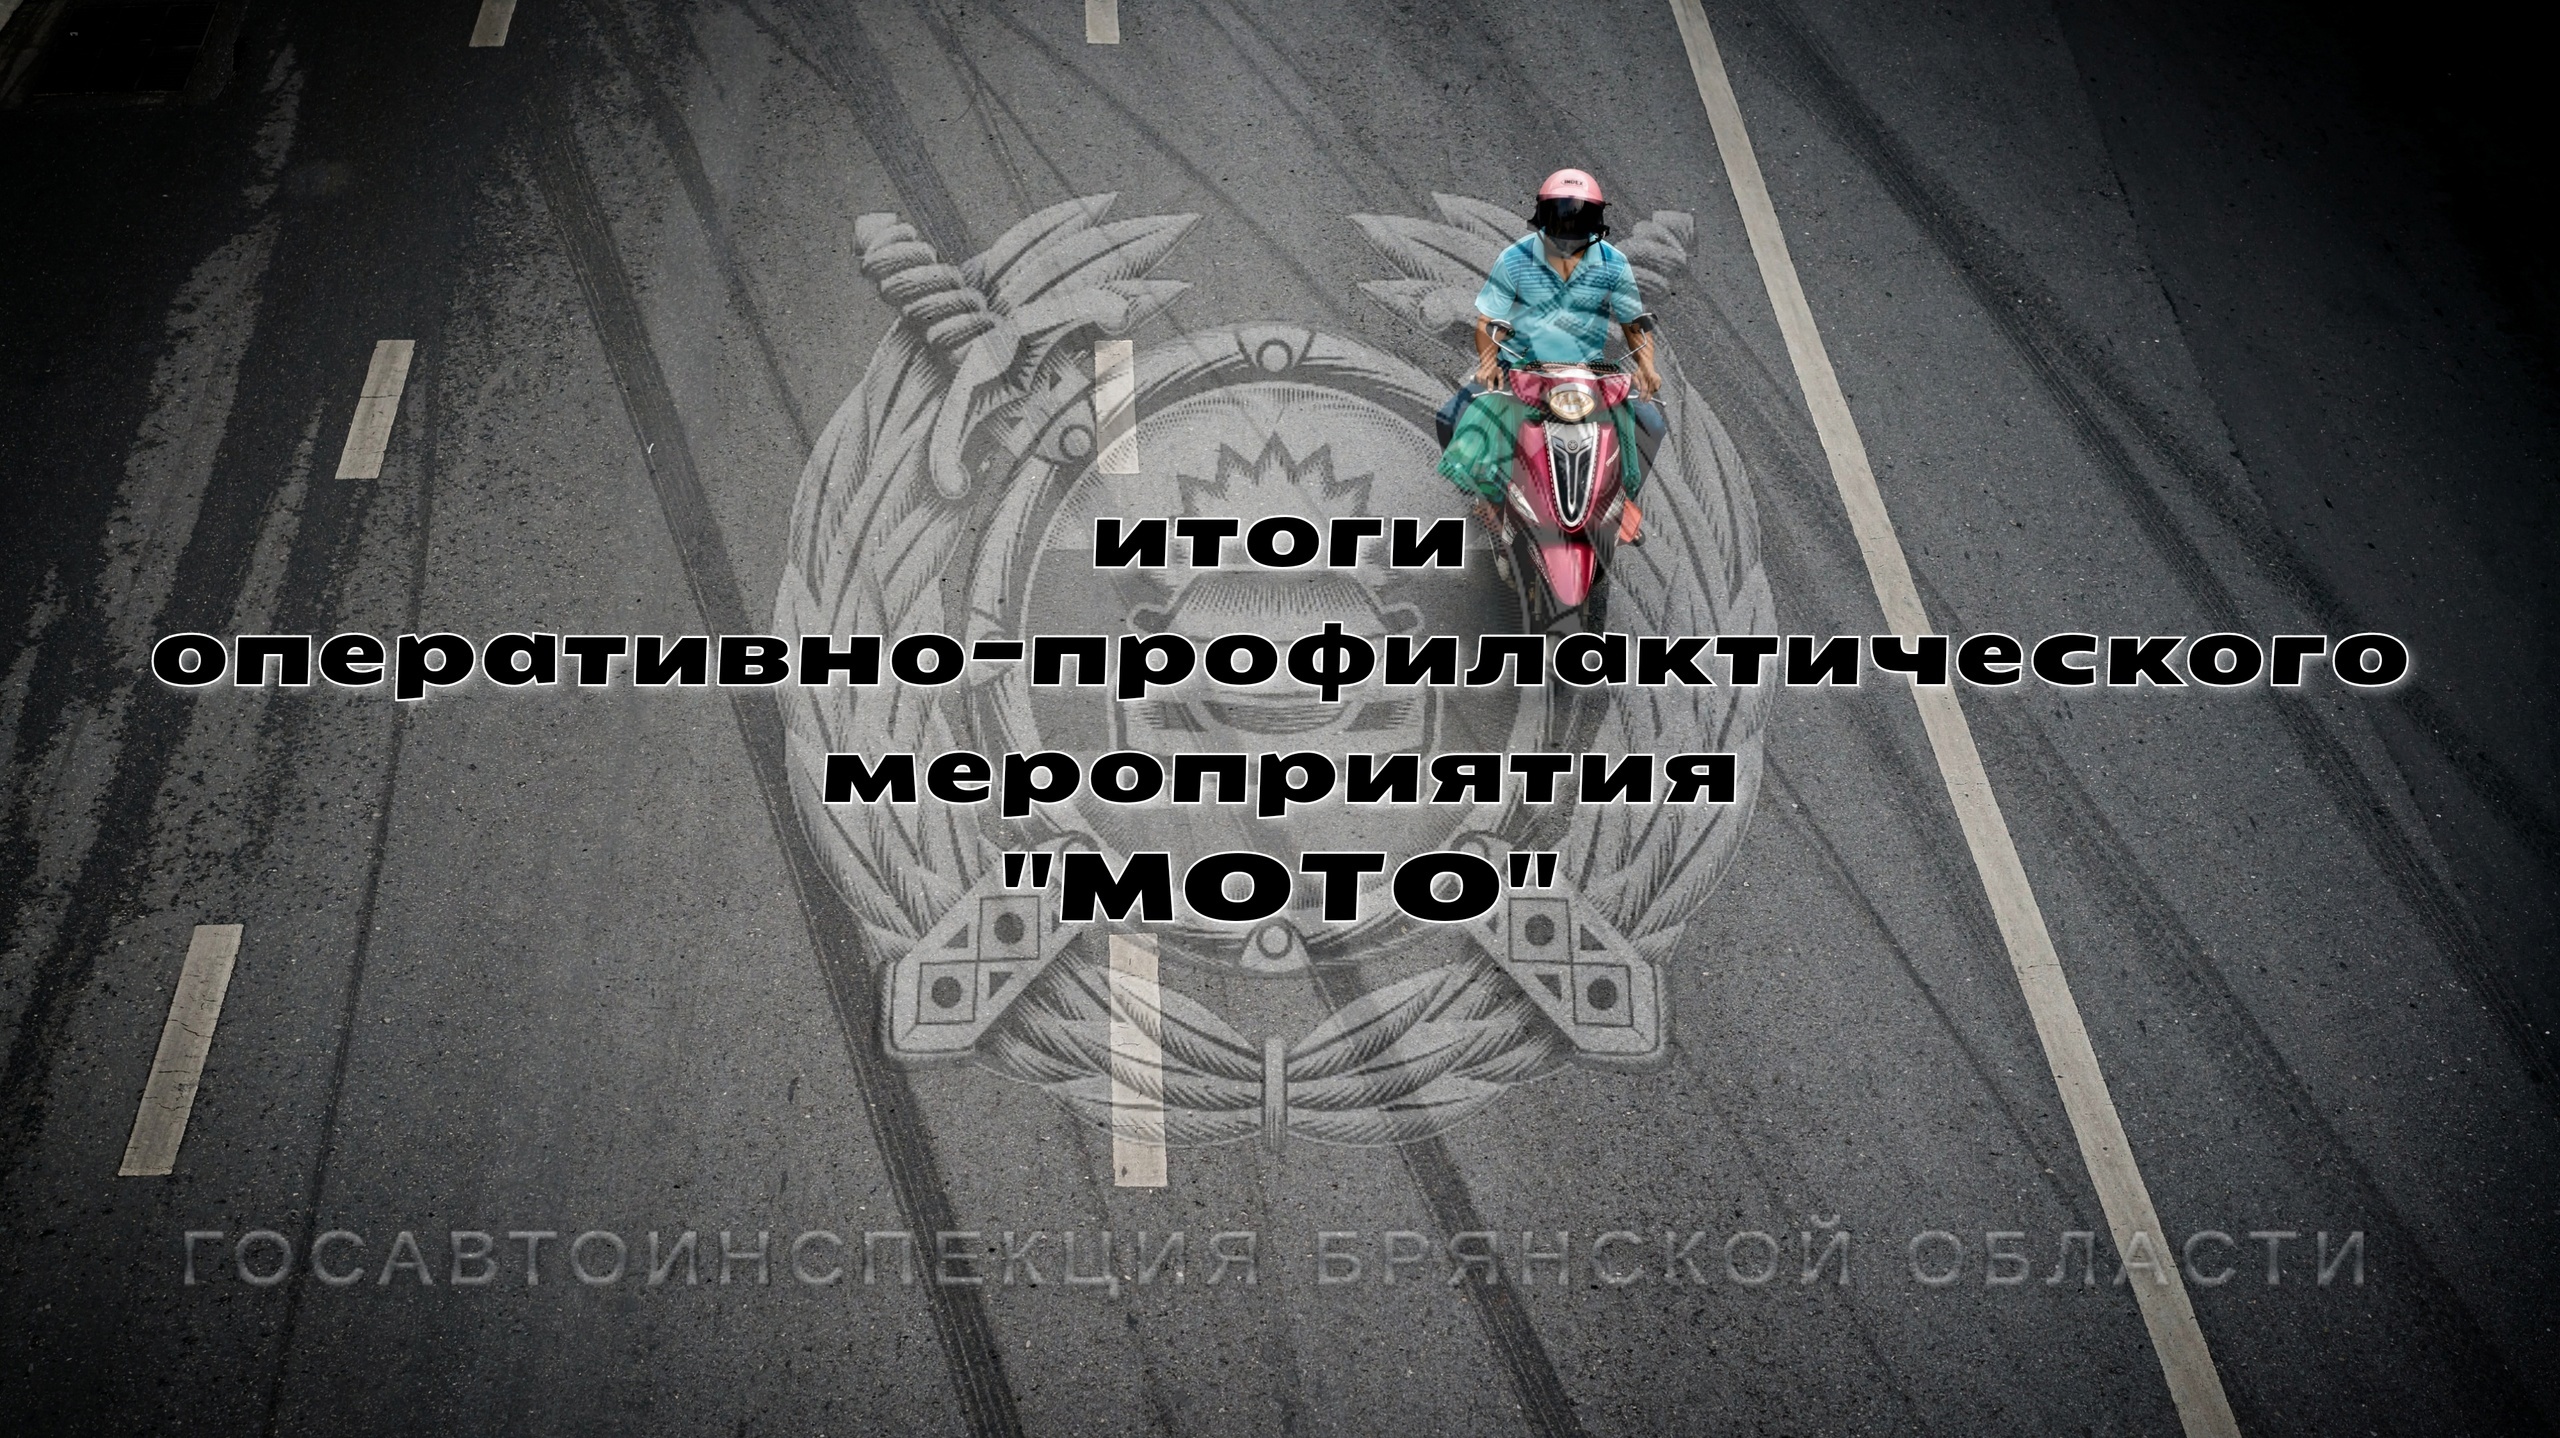 В Брянской области за три дня задержали 12 пьяных мотоциклистов